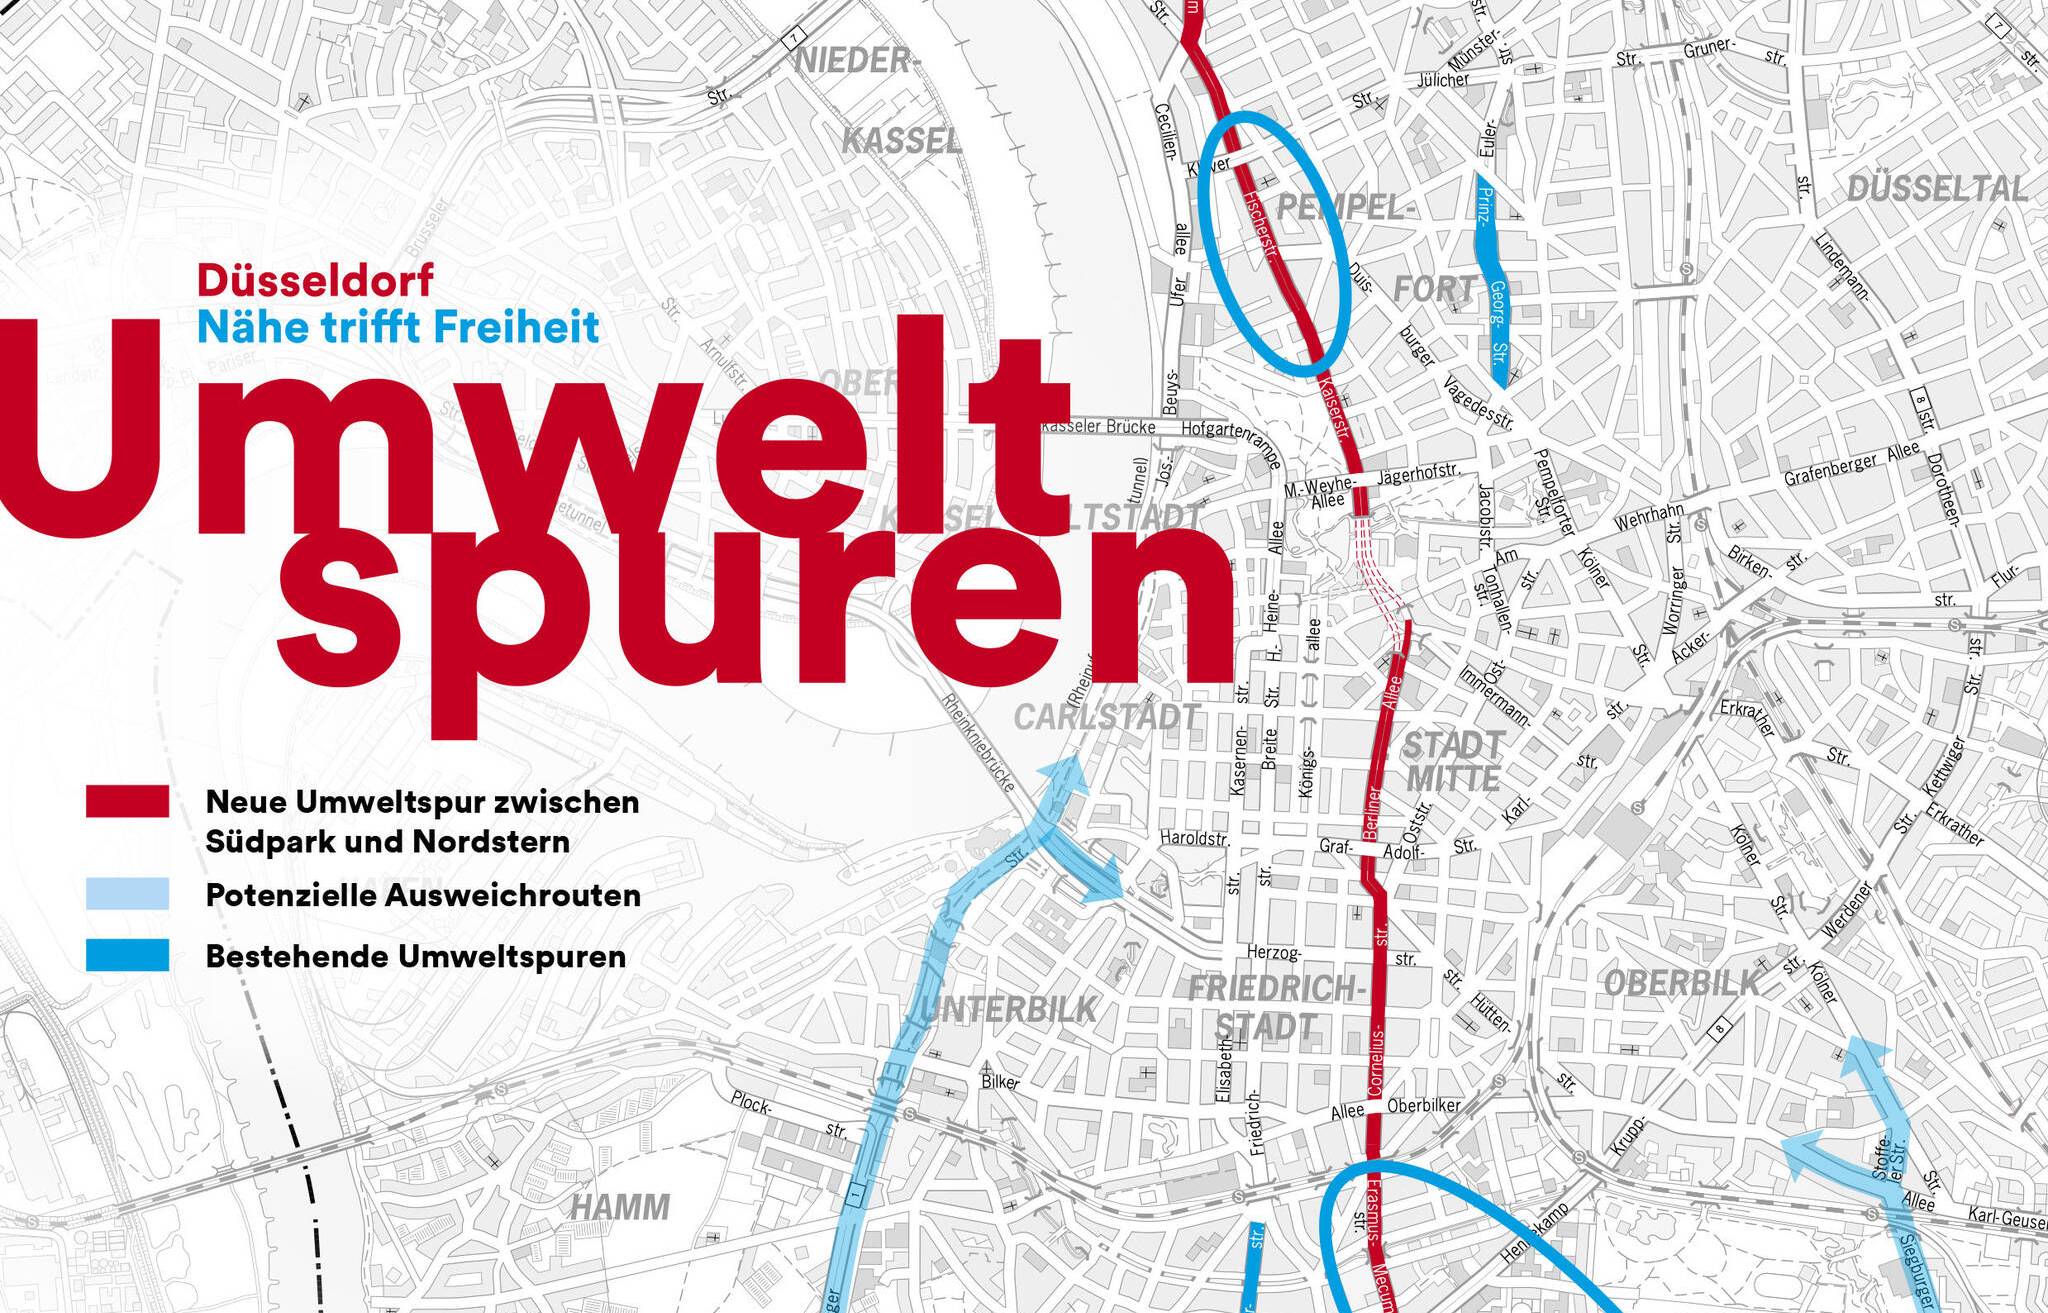  Die Grafik zeigt die beiden vorhandenen Umweltspuren und die geplante dritte Umweltspur der Landeshauptstadt Düsseldorf. 